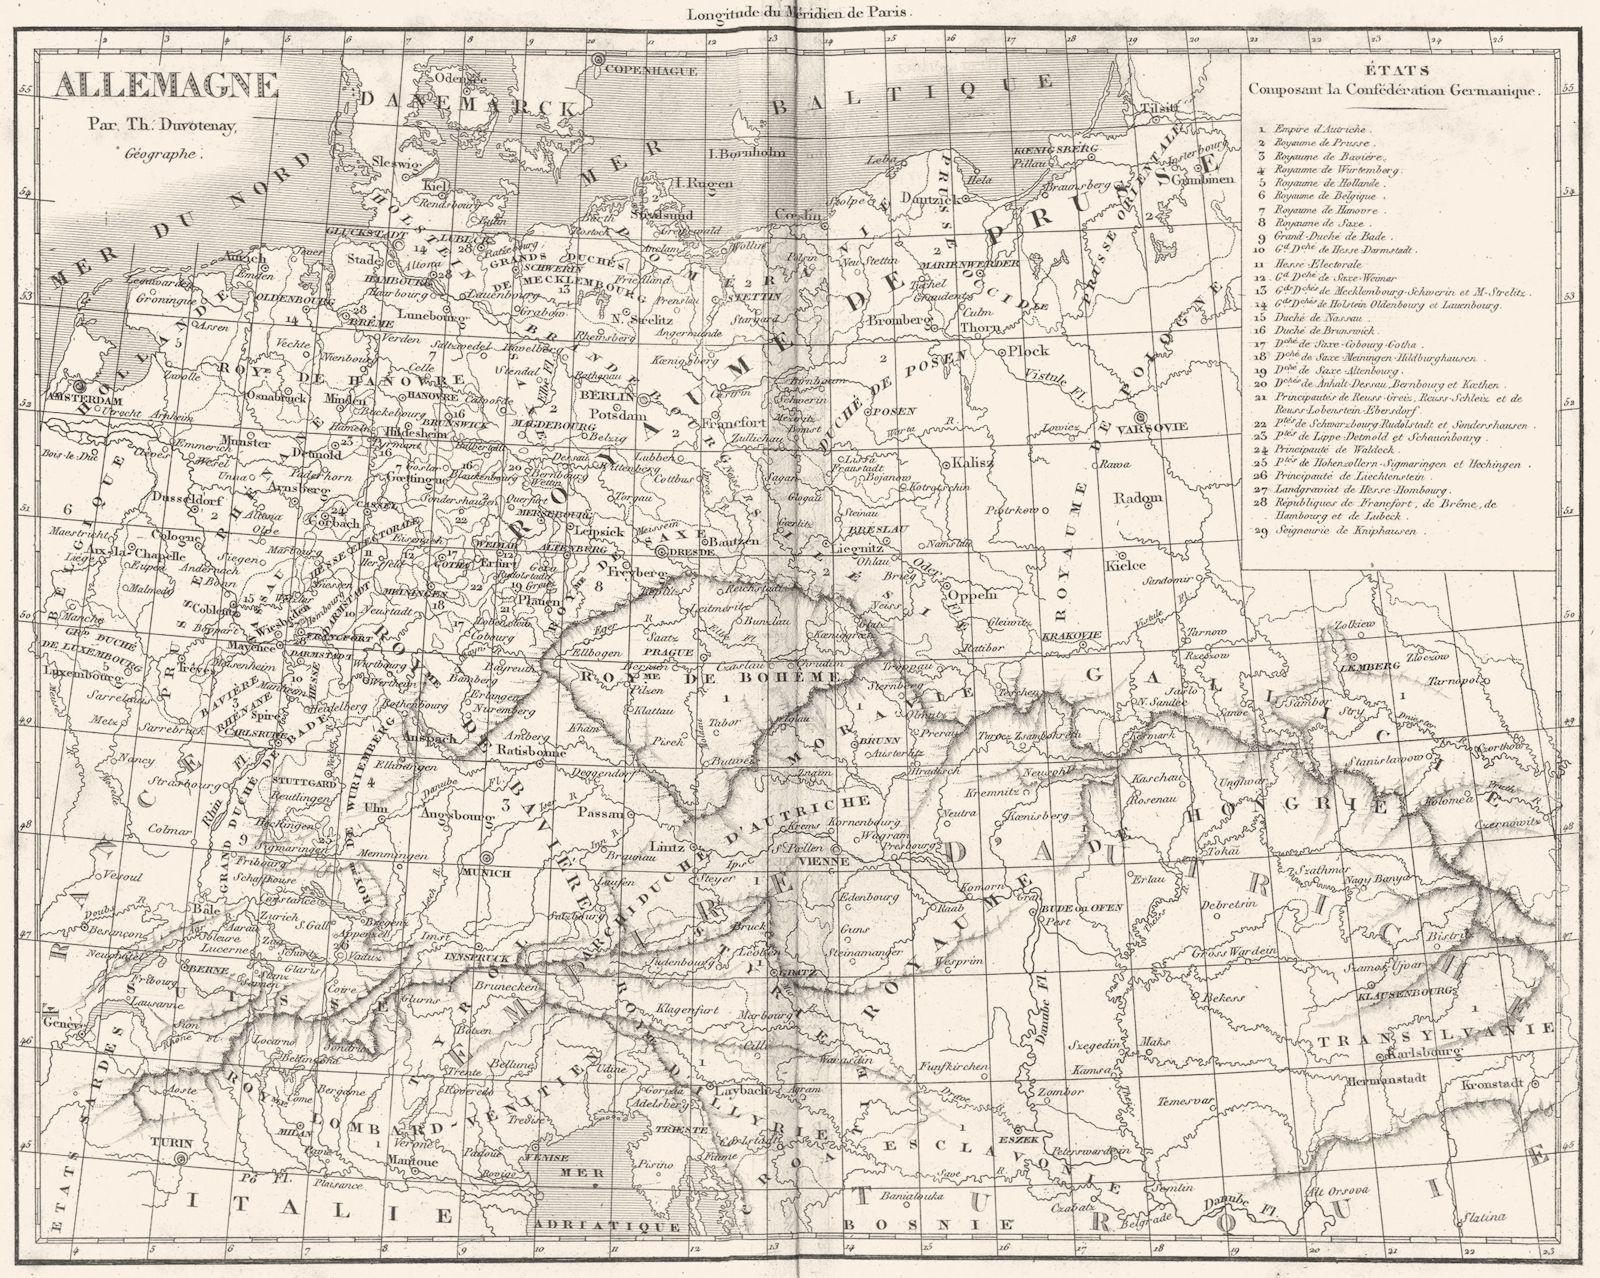 GERMANY. Allemagne 1879 old antique vintage map plan chart